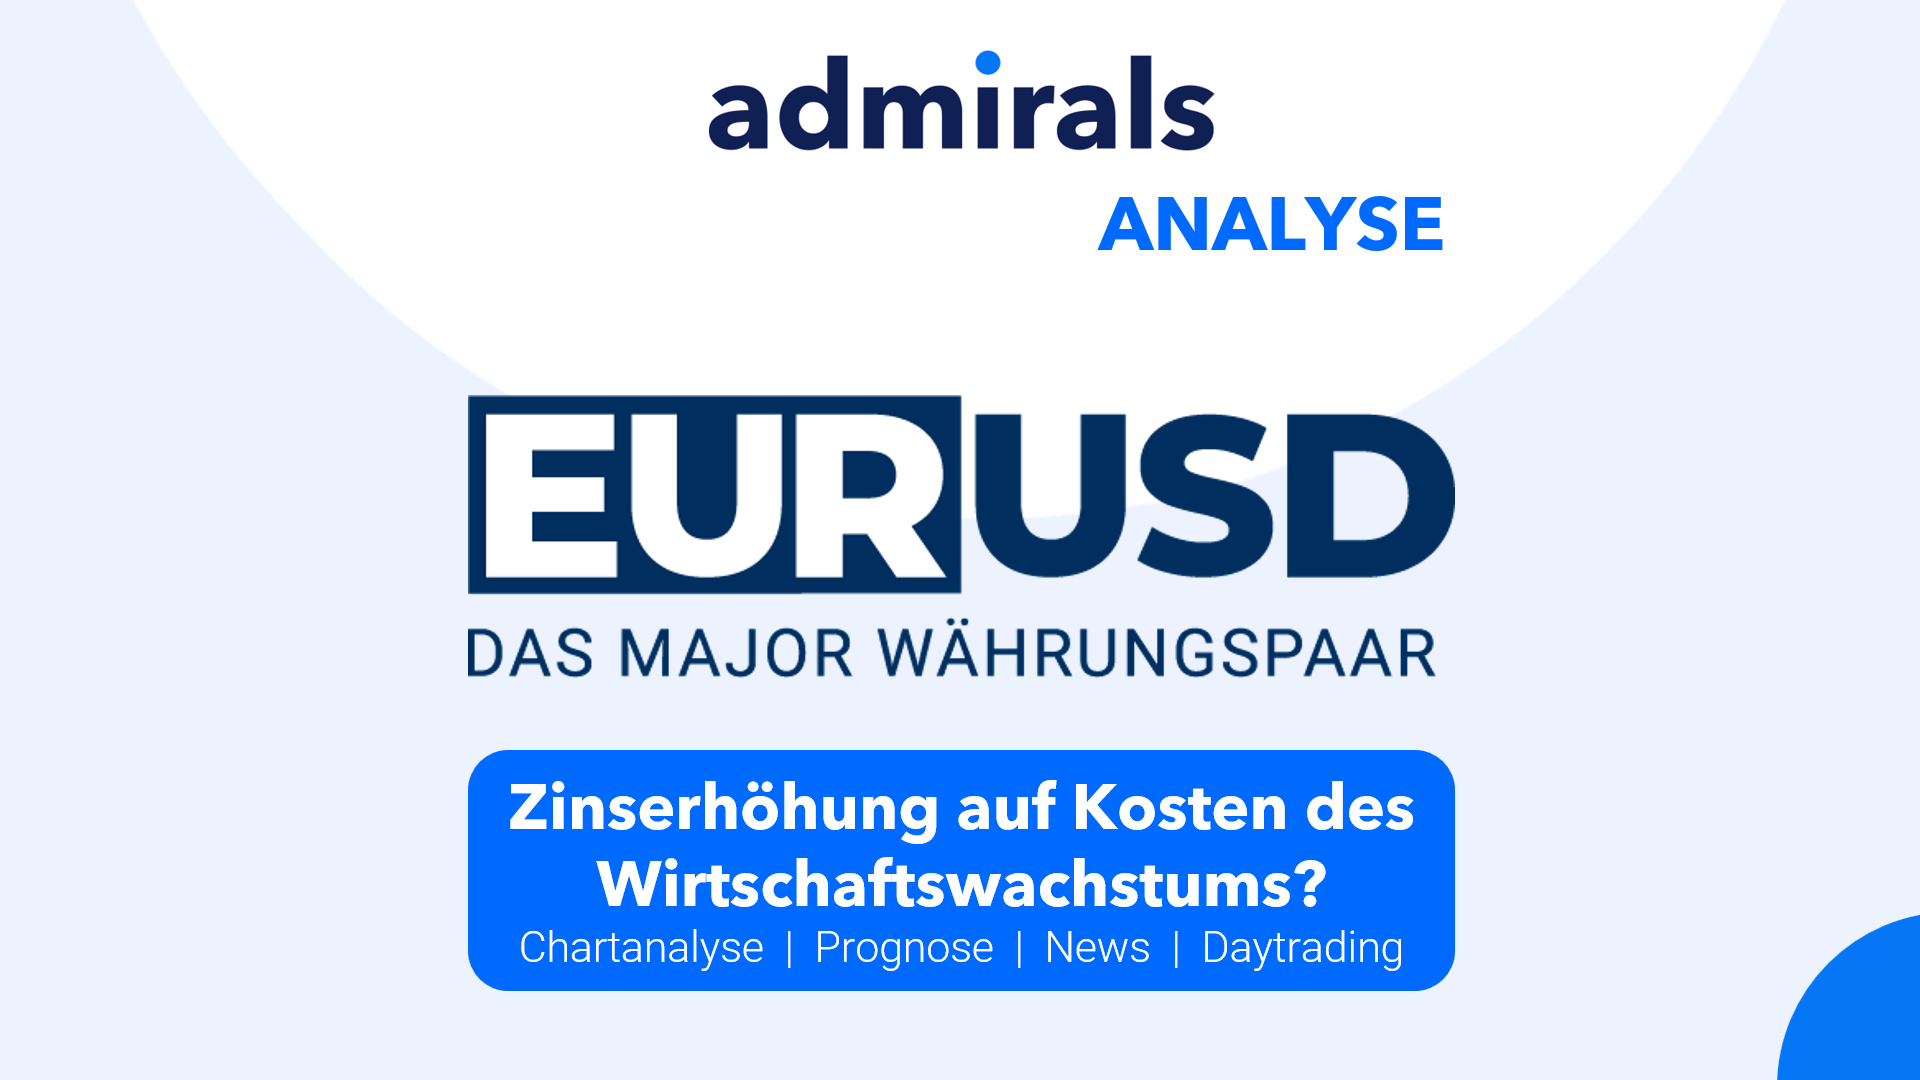 EURUSD-Analyse-Zinserhöhung-auf-Kosten-des-Wirtschaftswachstums-Kommentar-Admirals-GodmodeTrader.de-1